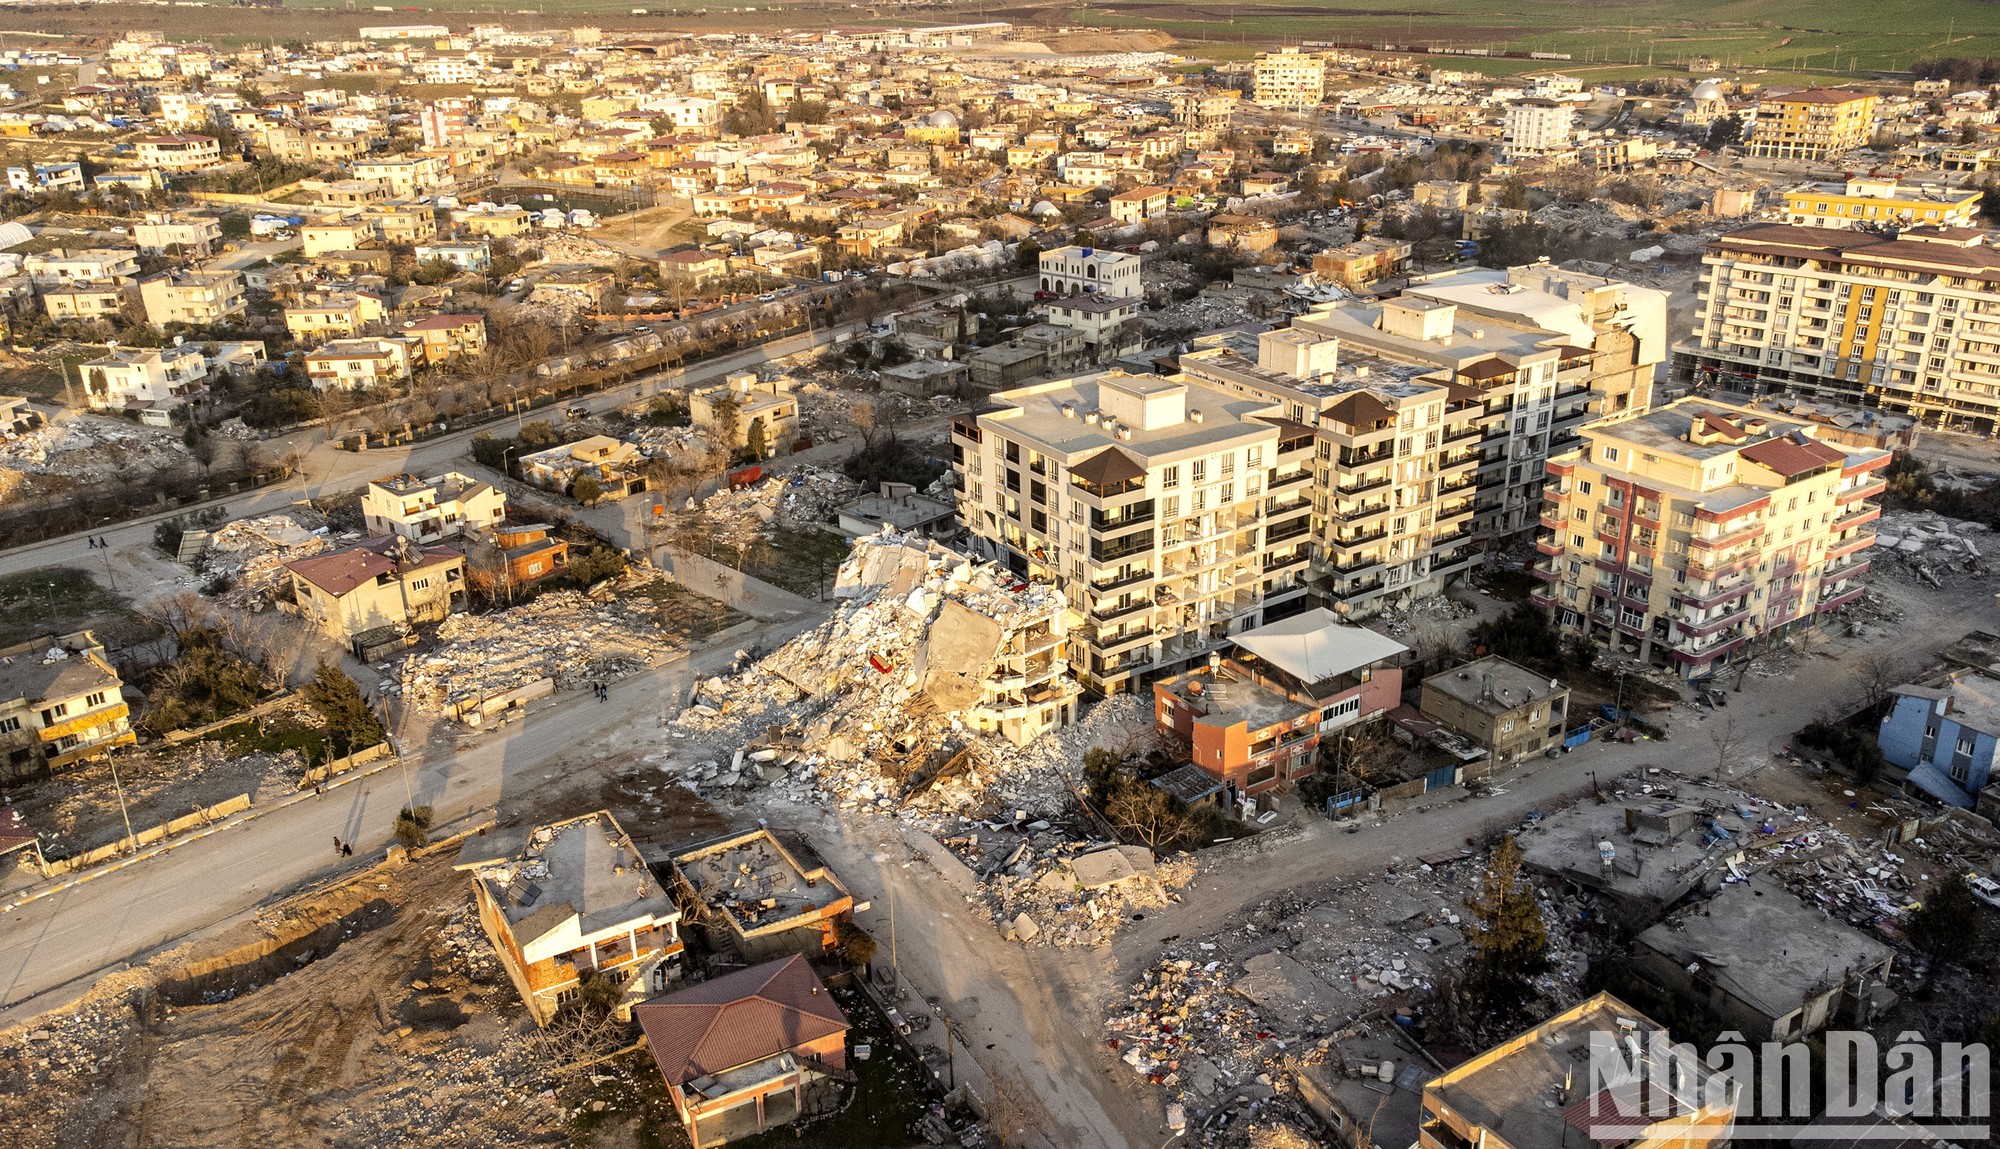 Thoát chết kỳ diệu sau đại địa chấn, người Thổ Nhĩ Kỳ “dìu nhau” qua khó khăn ảnh 3